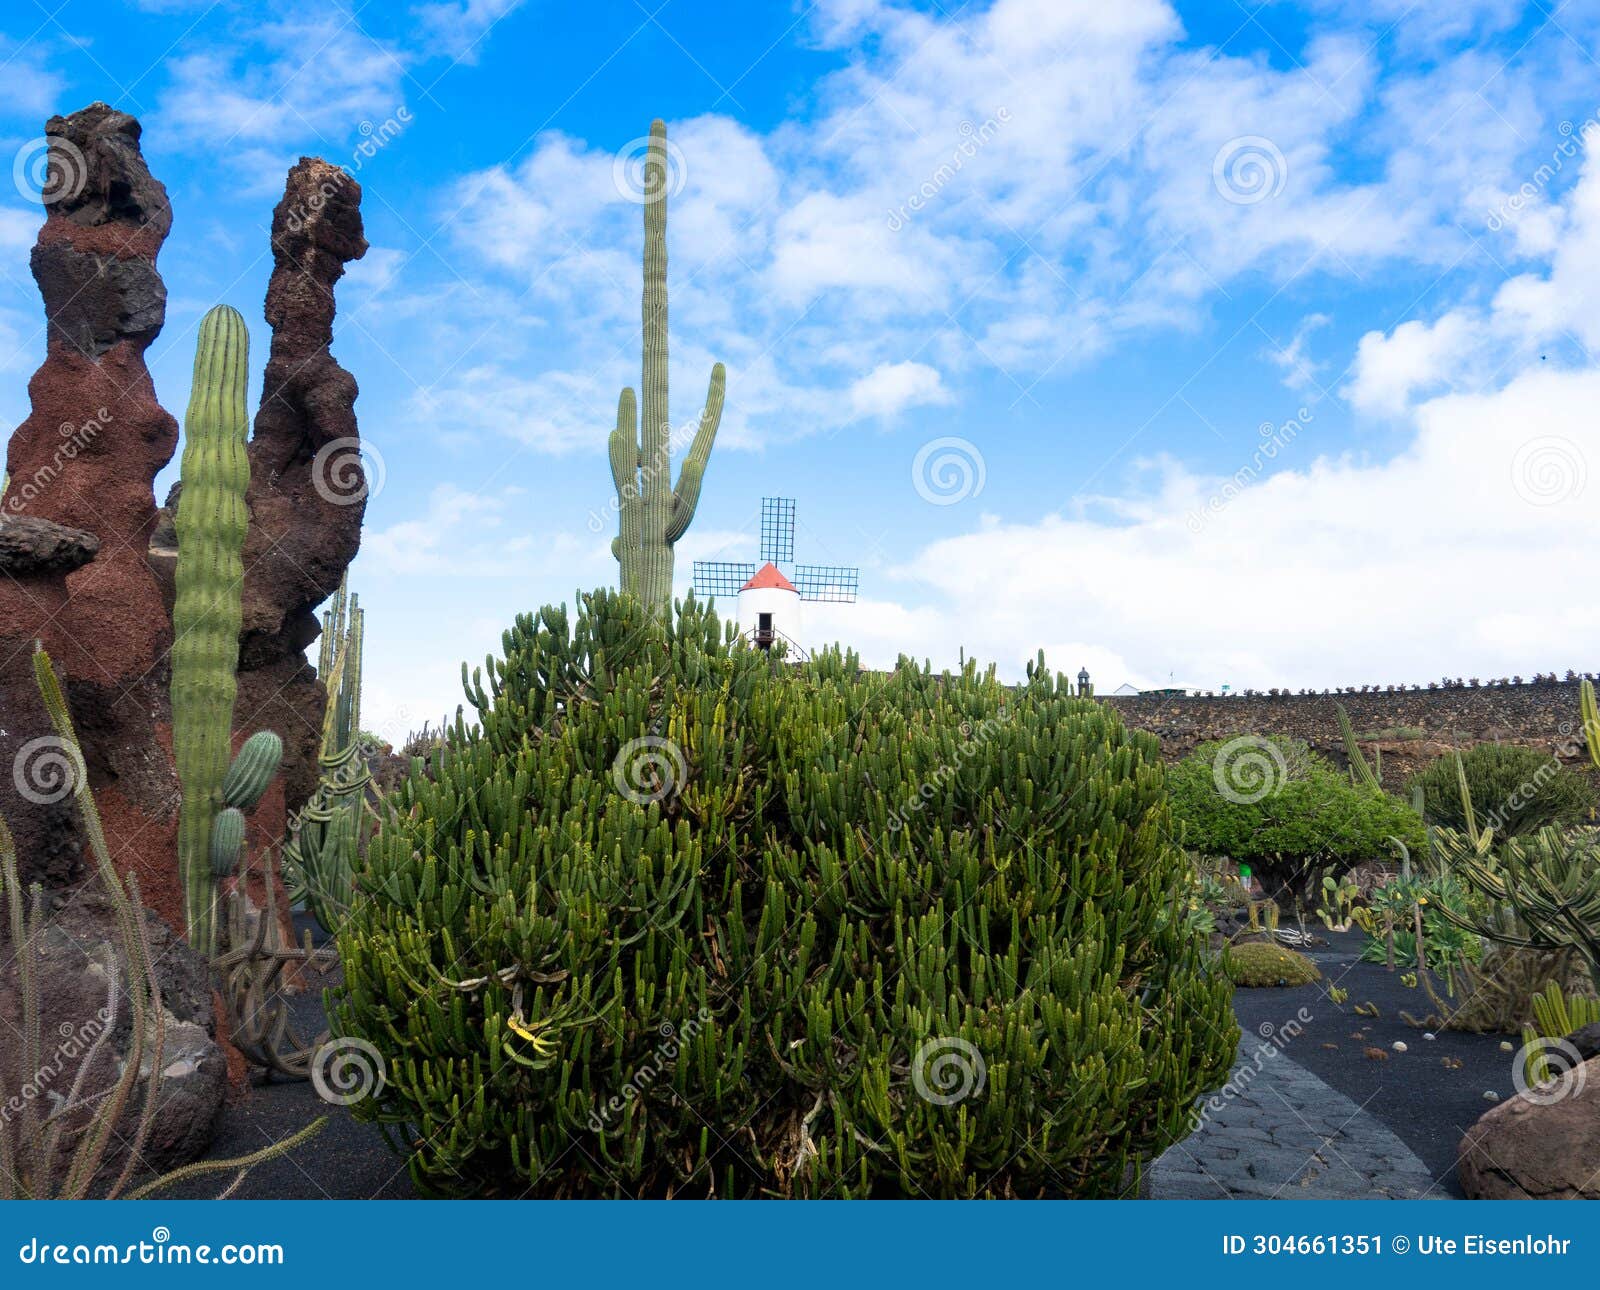 popular jardin de cactus, lanzarote, spain